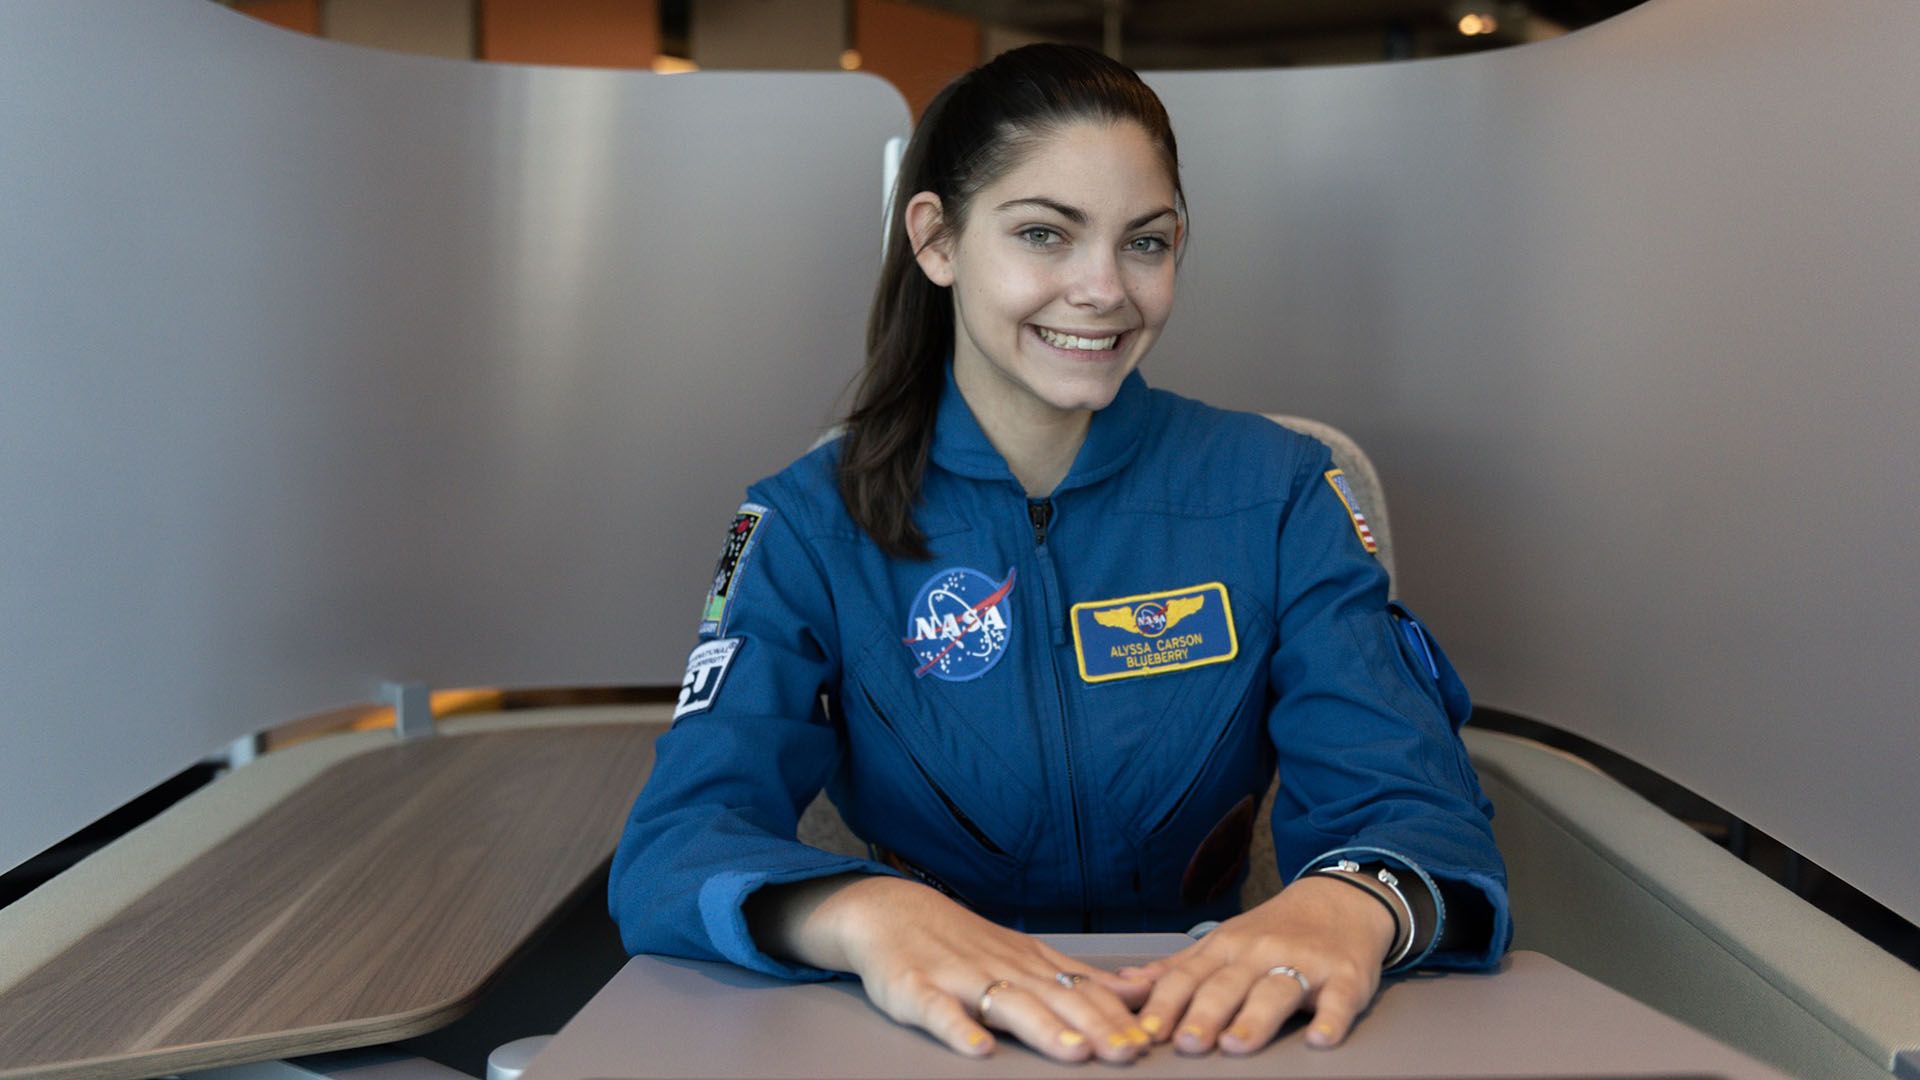 Alyssa Carson, la joven astronauta que cree que nada es imposible: Quiero ser parte de la primera misión a Marte